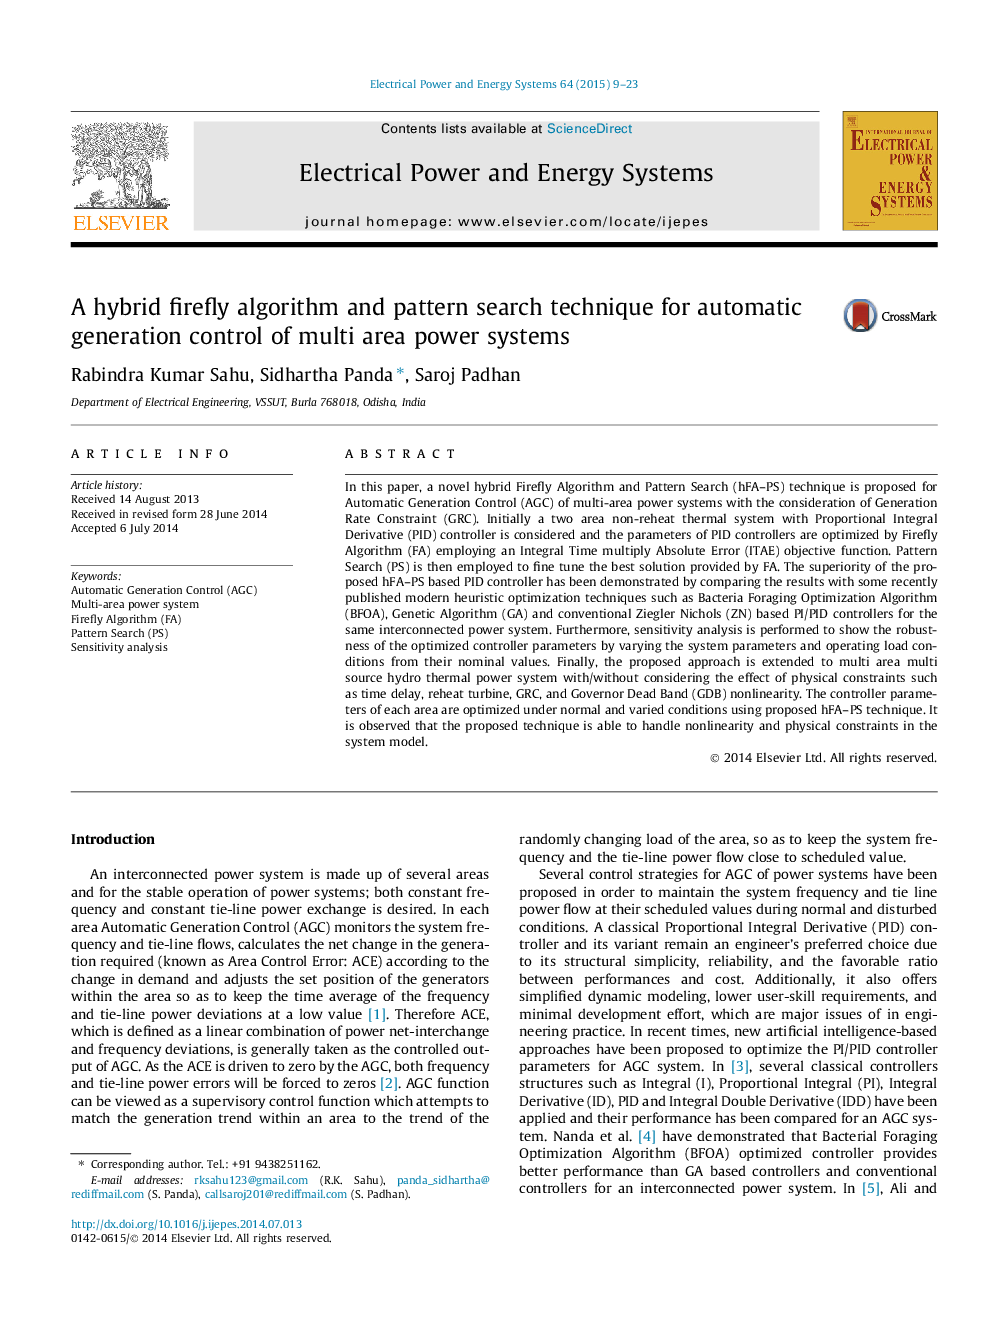 یک الگوریتم ترکیبی کره ای و تکنیک جستجوی الگوریتم برای کنترل تولید خودکار سیستم های چند منطقه ای 